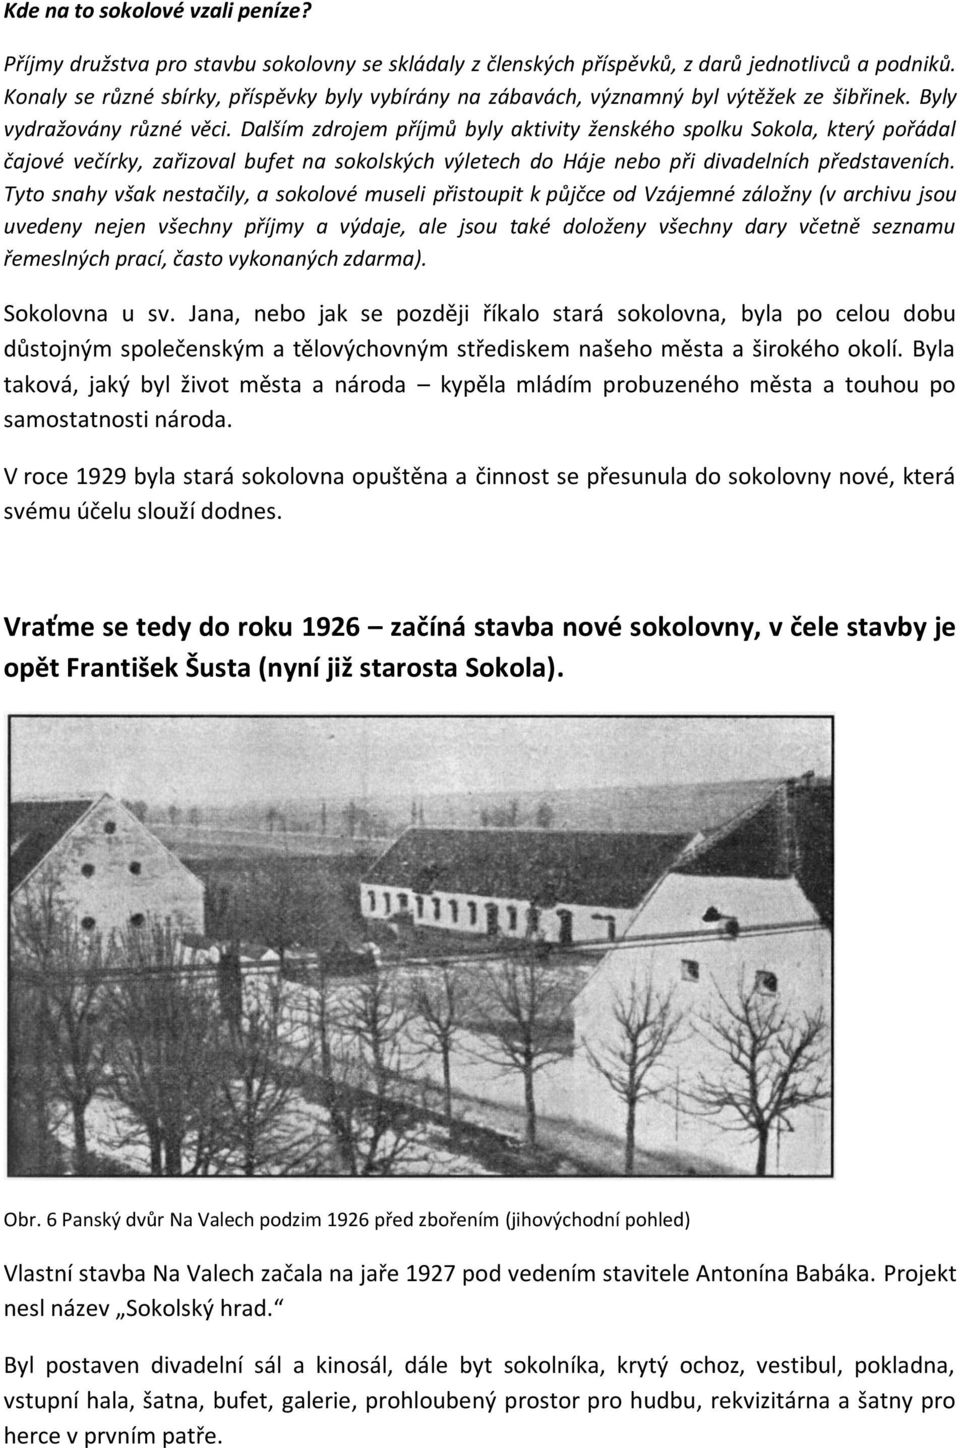 Dalším zdrojem příjmů byly aktivity ženského spolku Sokola, který pořádal čajové večírky, zařizoval bufet na sokolských výletech do Háje nebo při divadelních představeních.